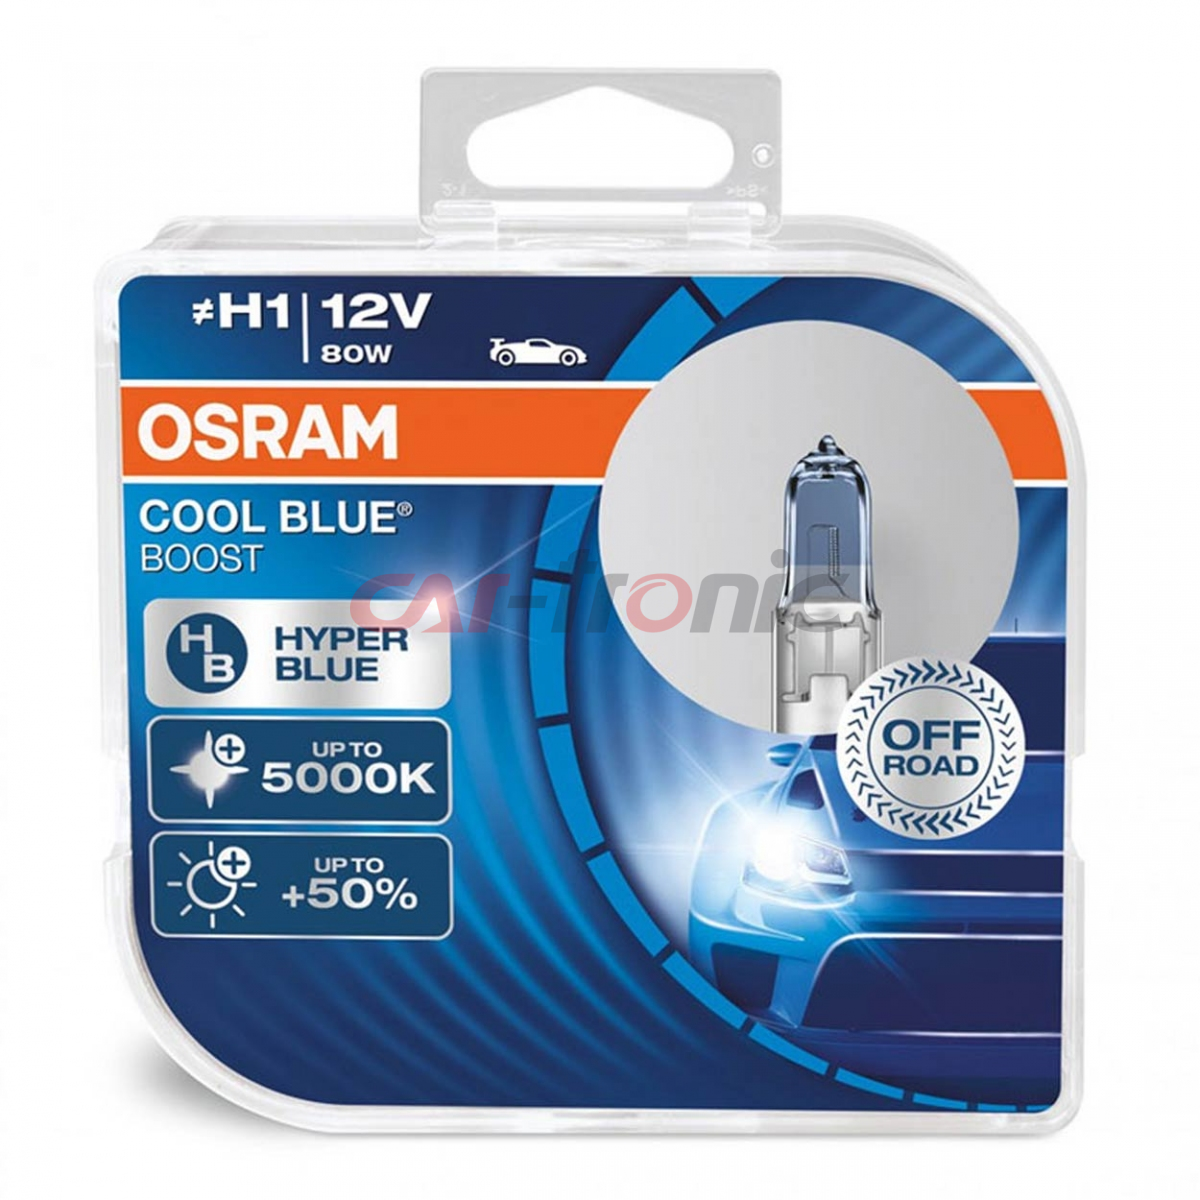 Żarówka halogenowa Osram H1 12V 80W P14,5s Cool Blue Boost 5500K / 2 szt.